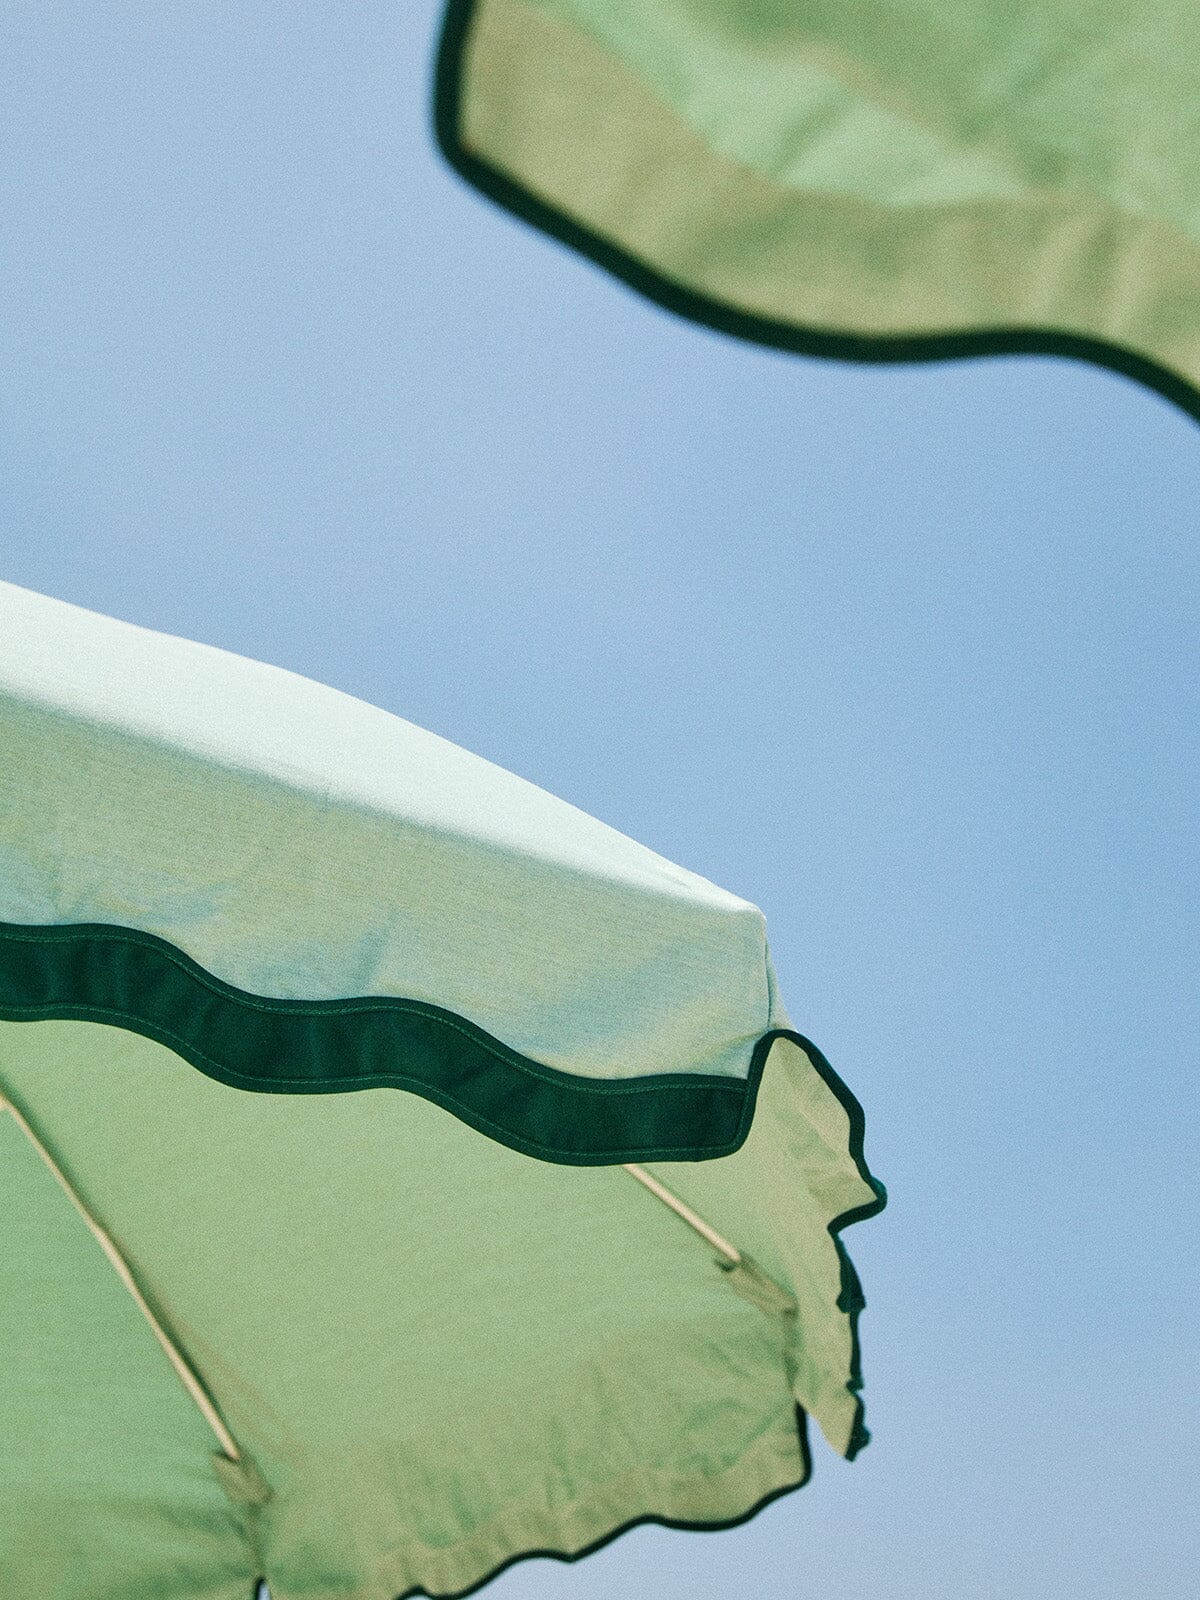 rivie green beach club umbrellas